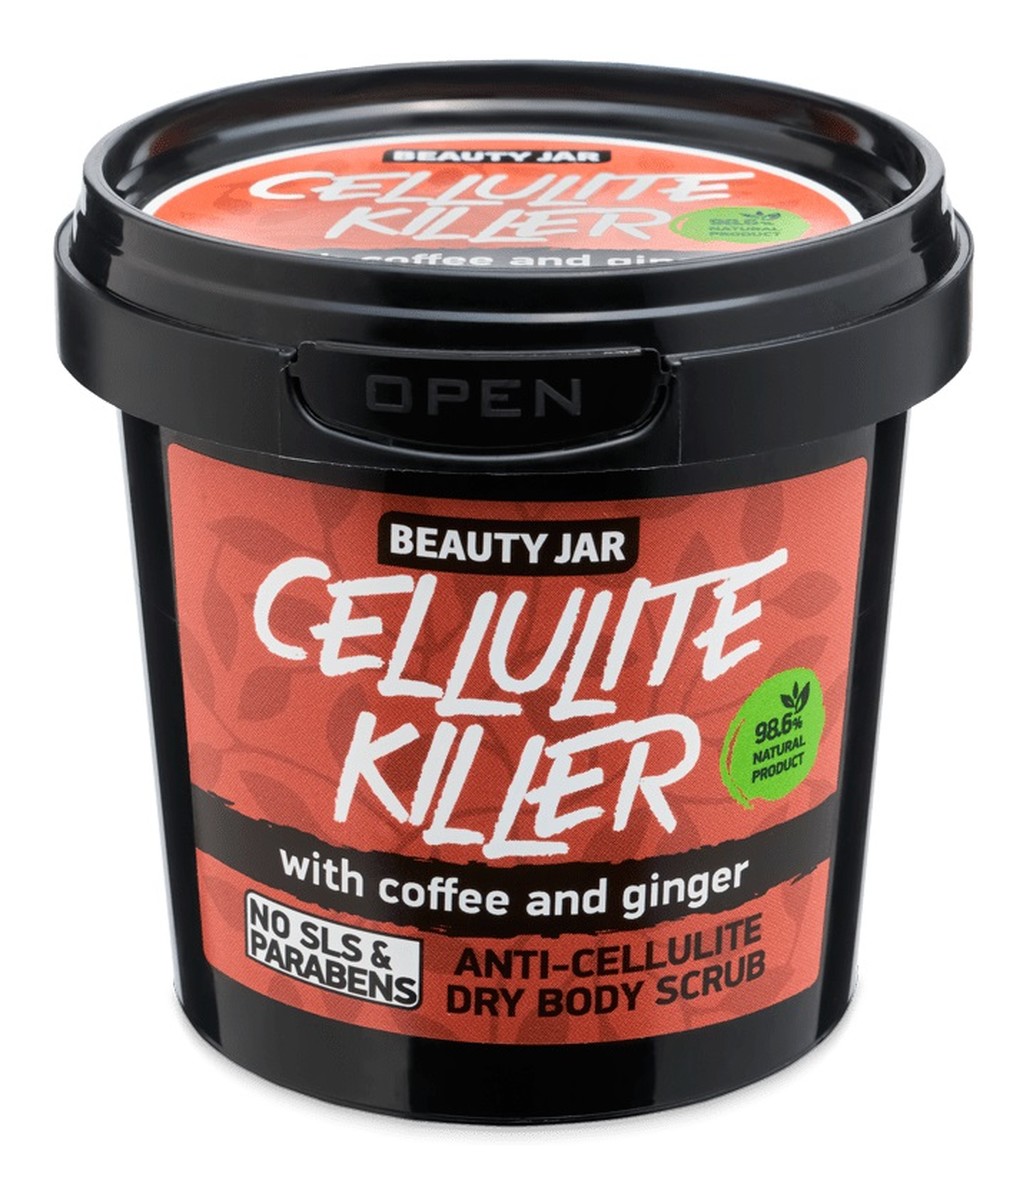 Cellulite killer antycellulitowy suchy peeling do ciała z kawą i imbirem